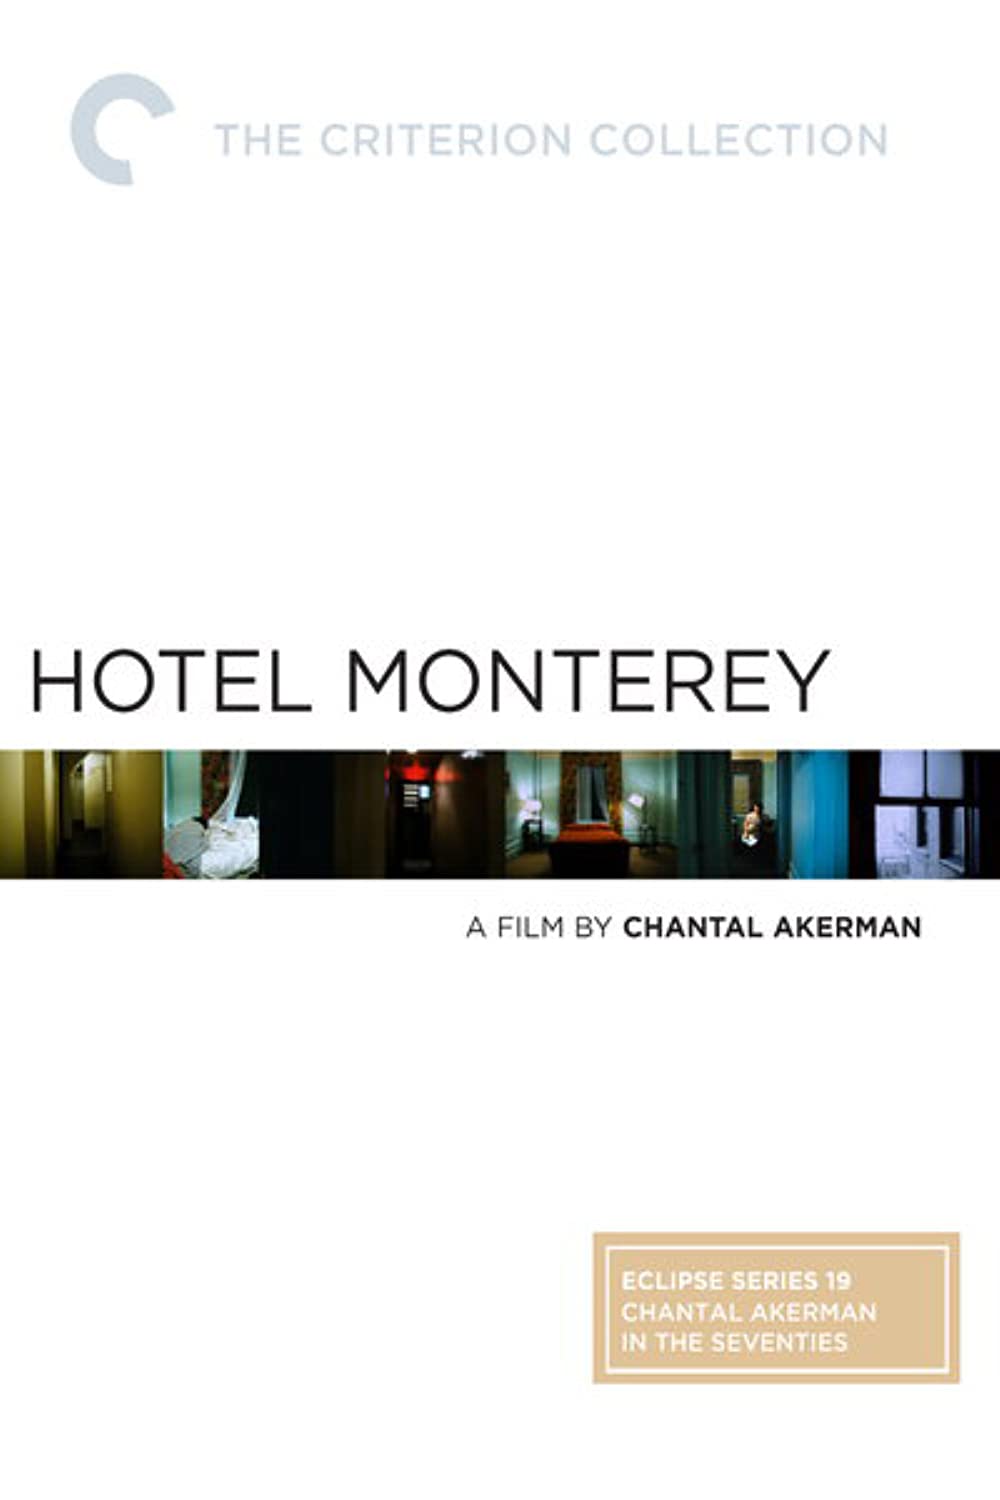 Filmbeschreibung zu Hotel Monterey